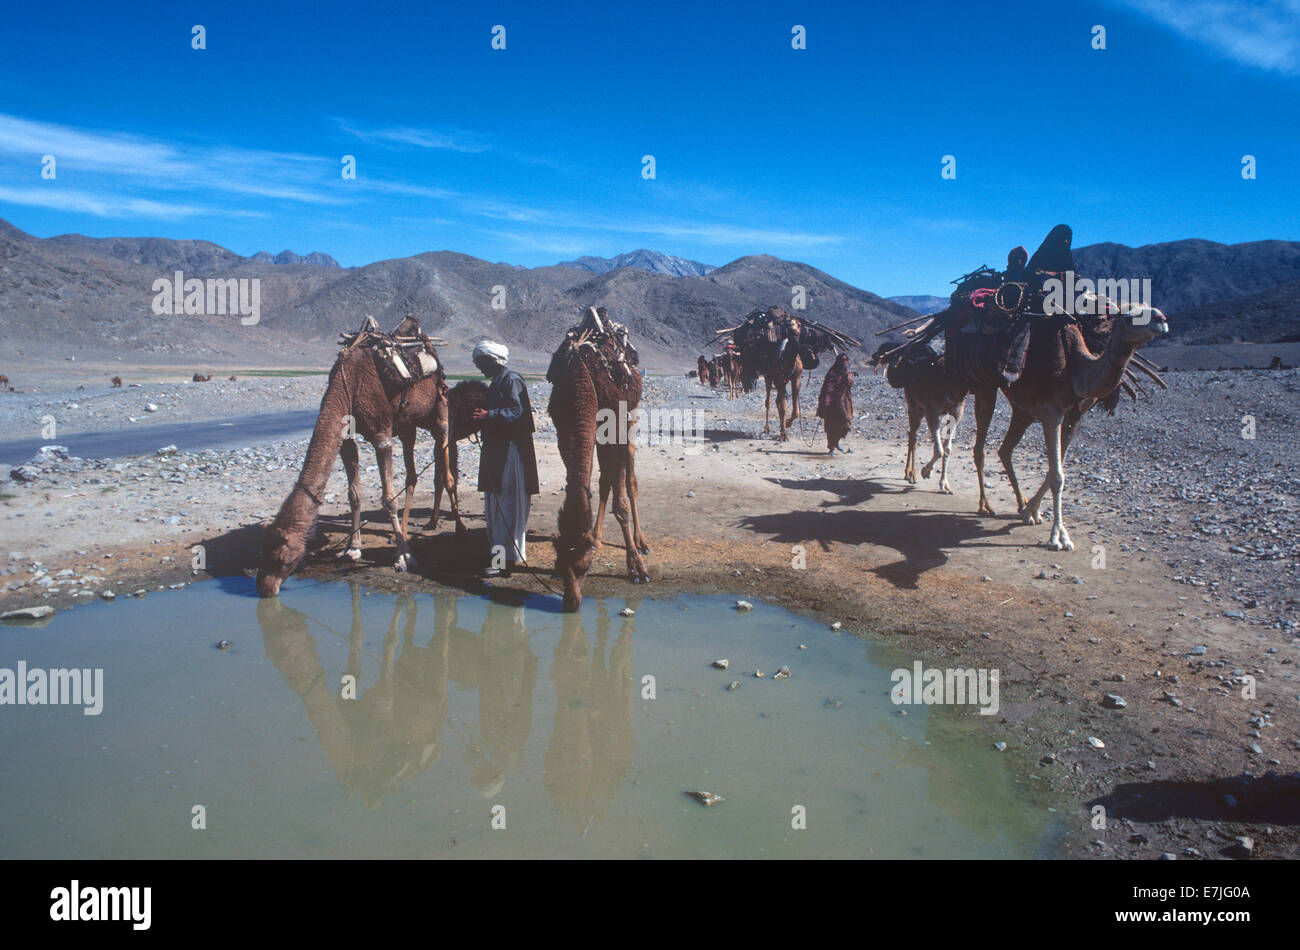 Nomades du désert, Bolan Pass, Pakistan Banque D'Images